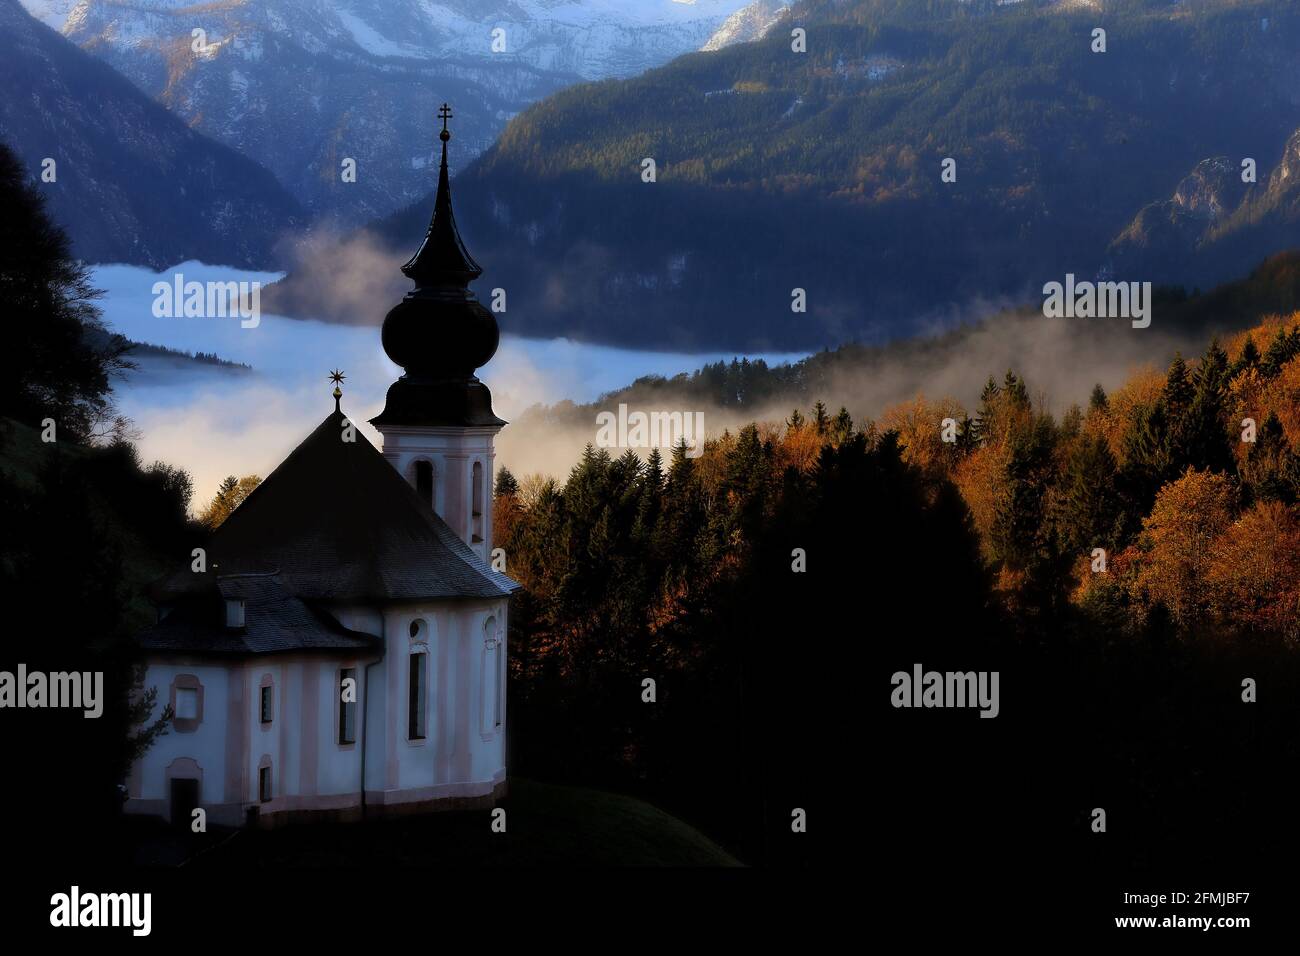 Der Watzmann in den Alpen ist das dominante Bergmassiv der Berchtesgadener Alpen und einer der berühmtesten Berge Deutschlands Stock Photo